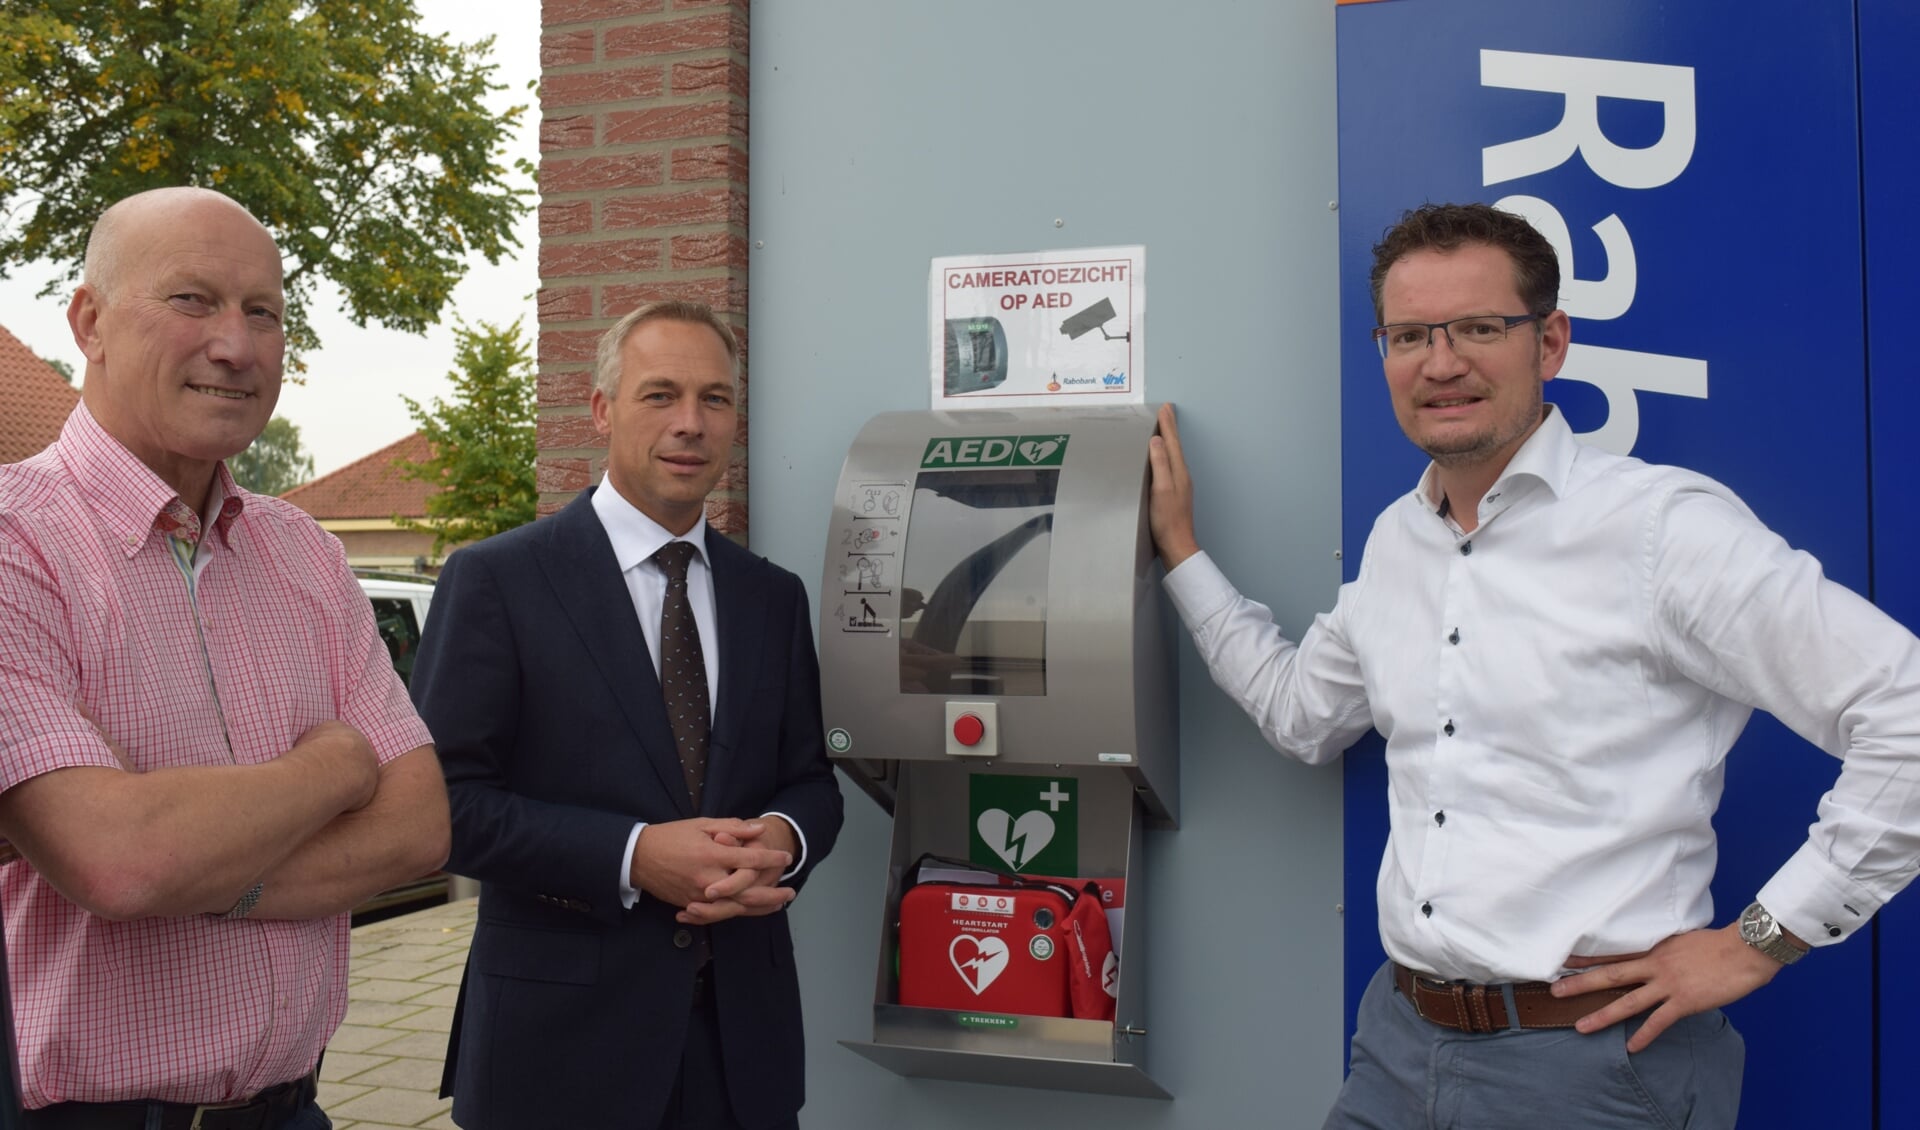 Ad Verhoef (l), Harold van de Wakker (m) en Ruth Nagel (r) hopen dat de AED nooit nodig zal zijn. 